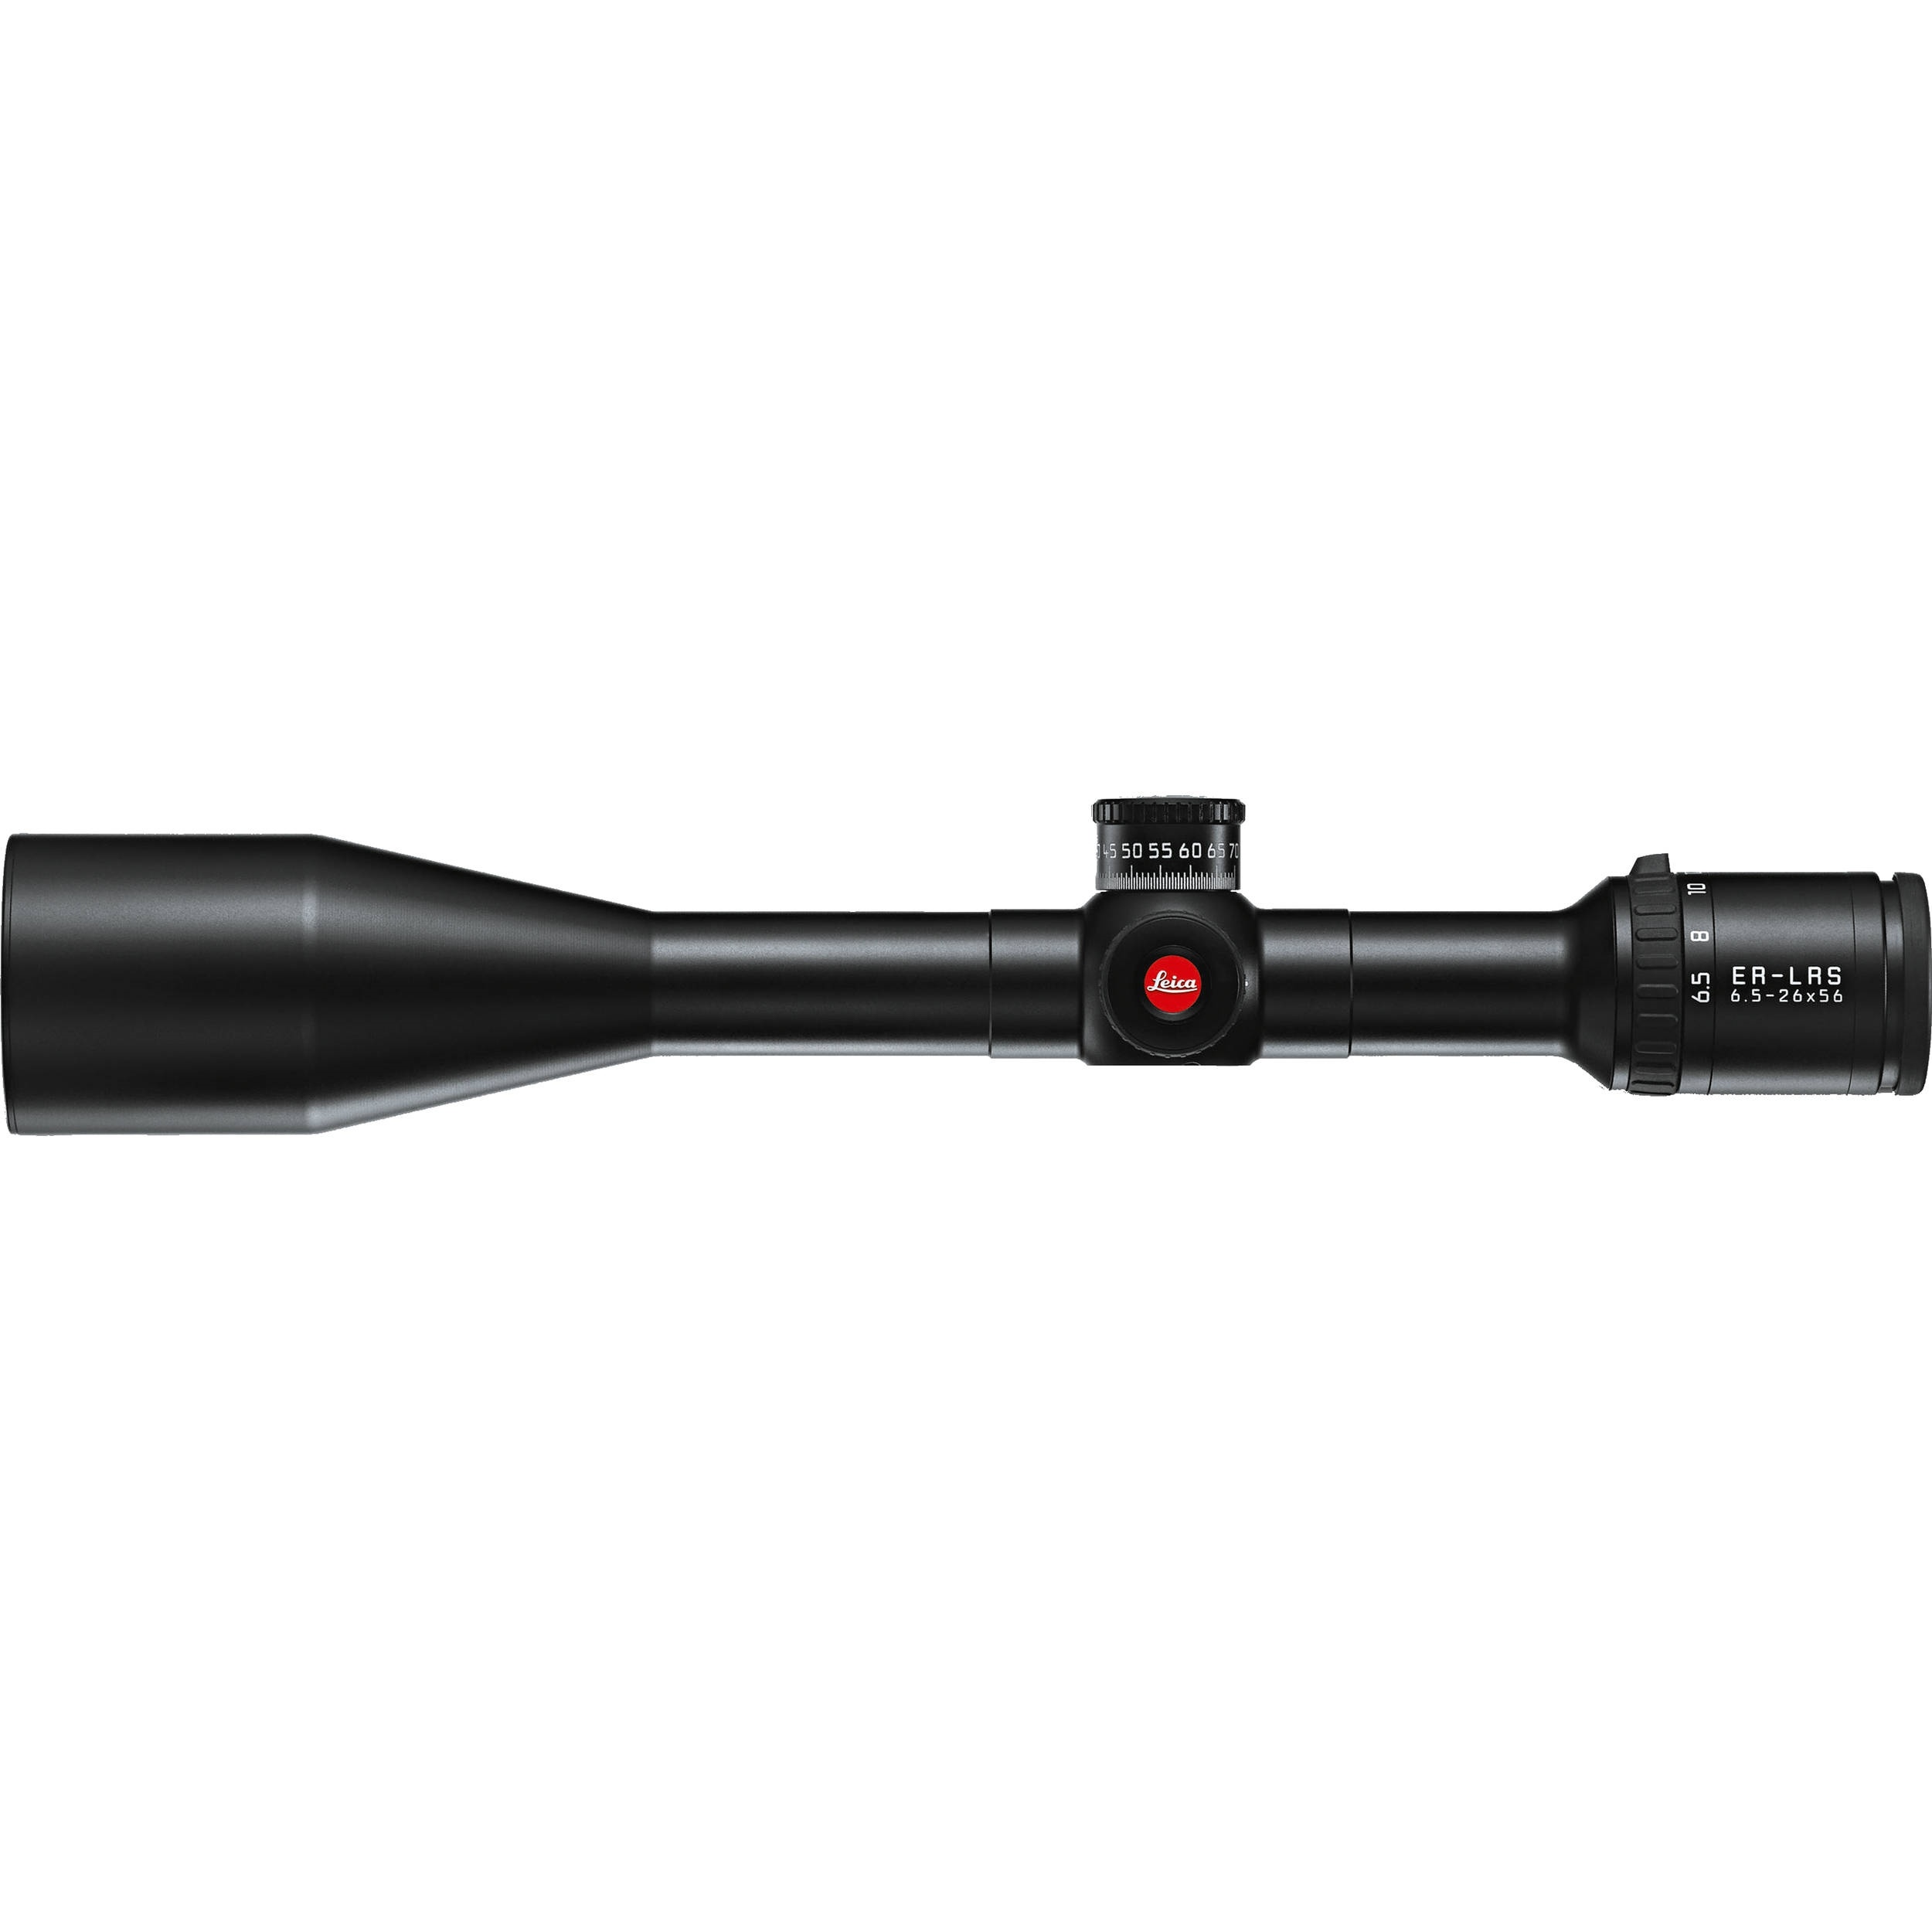 Leica ER 6.5-26x56 LRS Side Focus Riflescope (Ballistic)